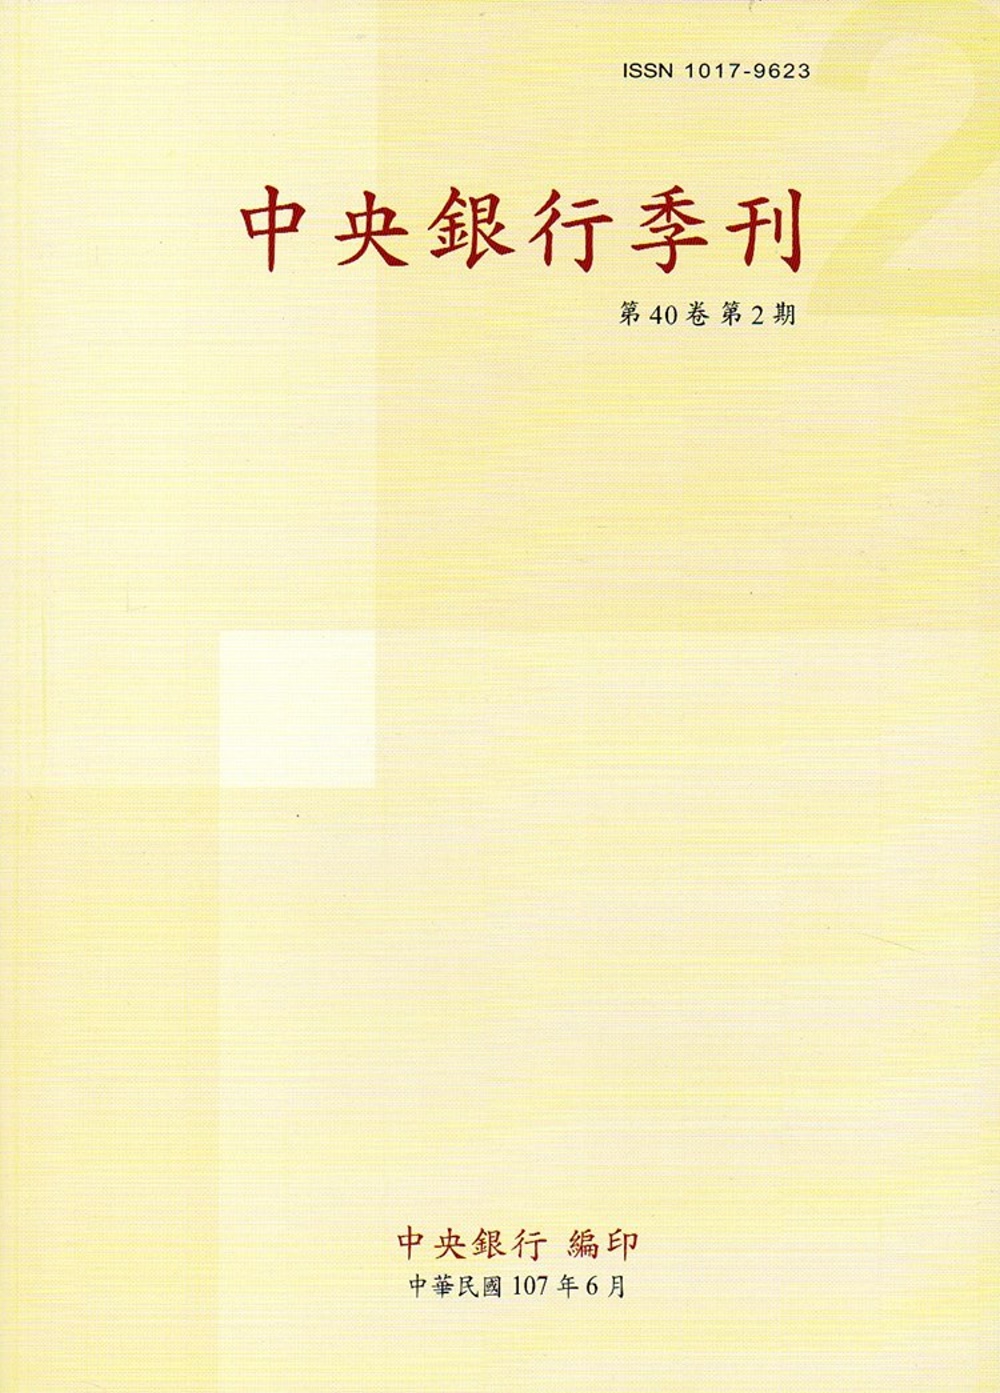 中央銀行季刊40卷2期(107.06)